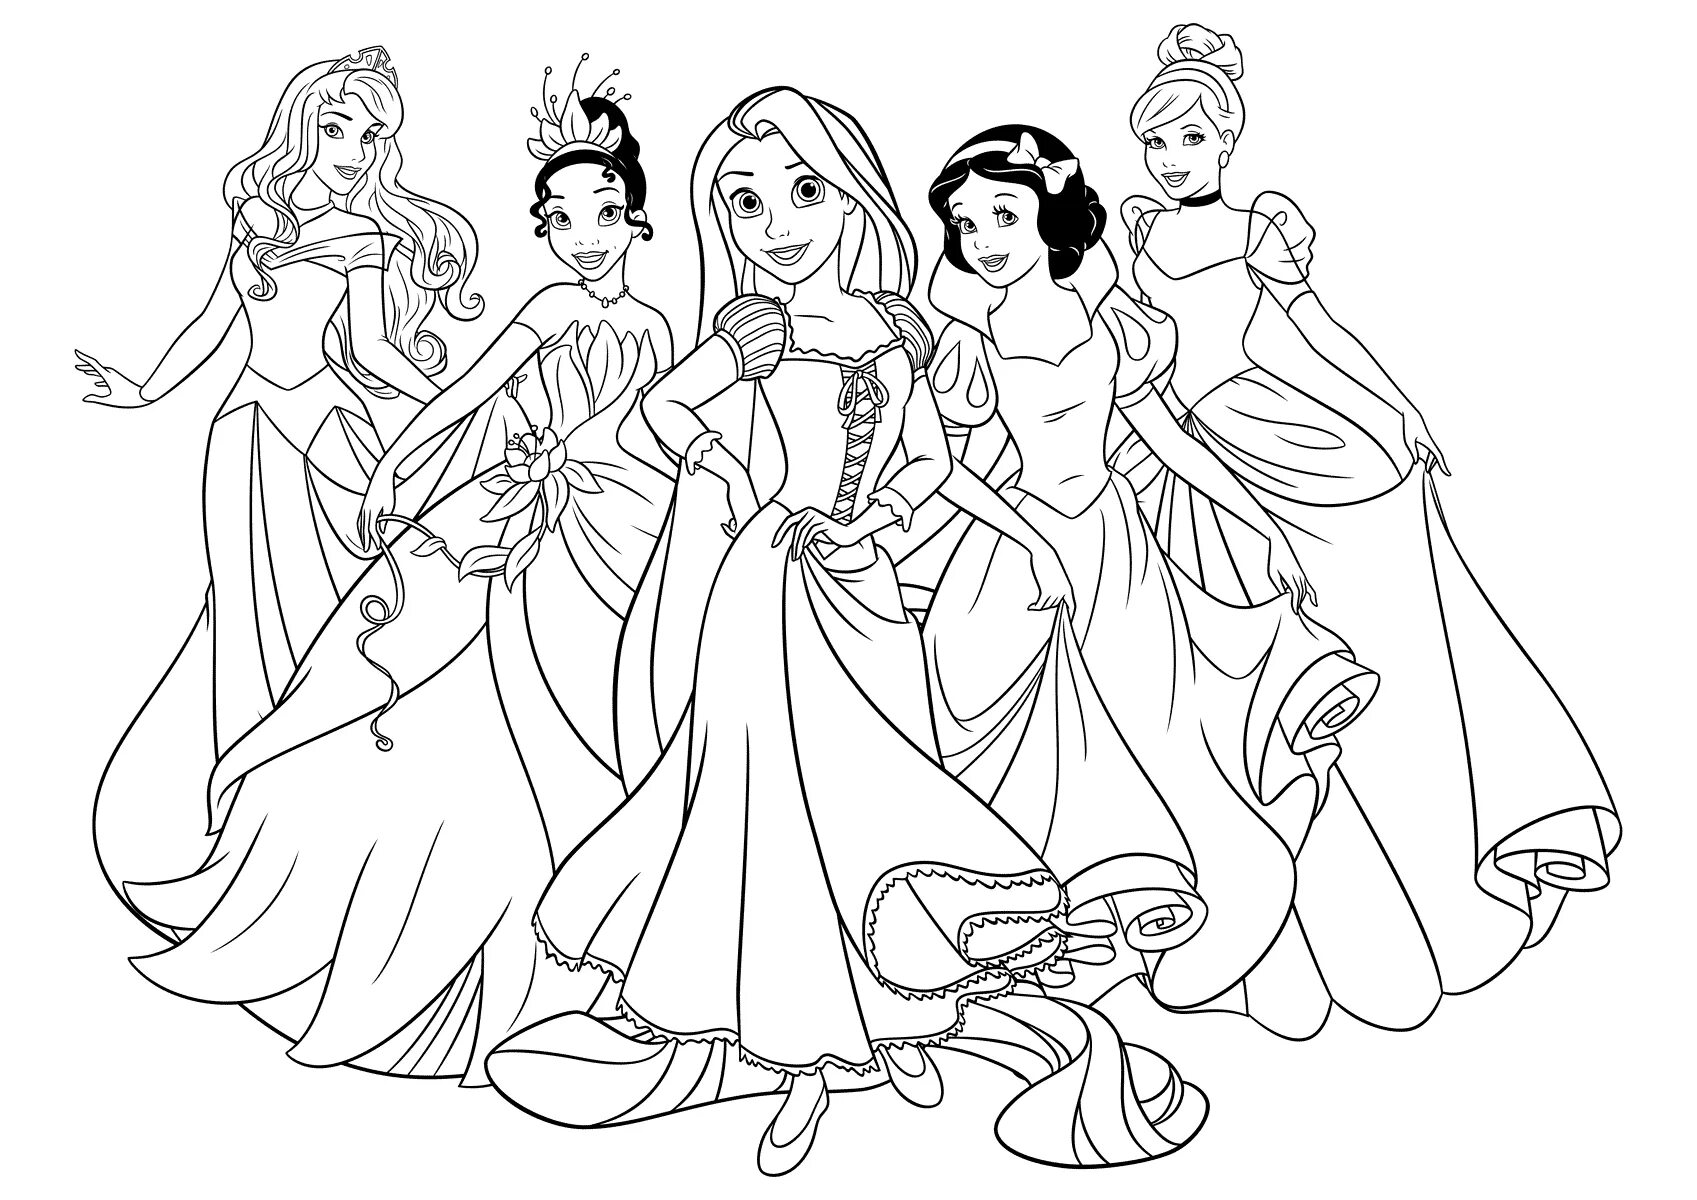 Turn on princesses #4